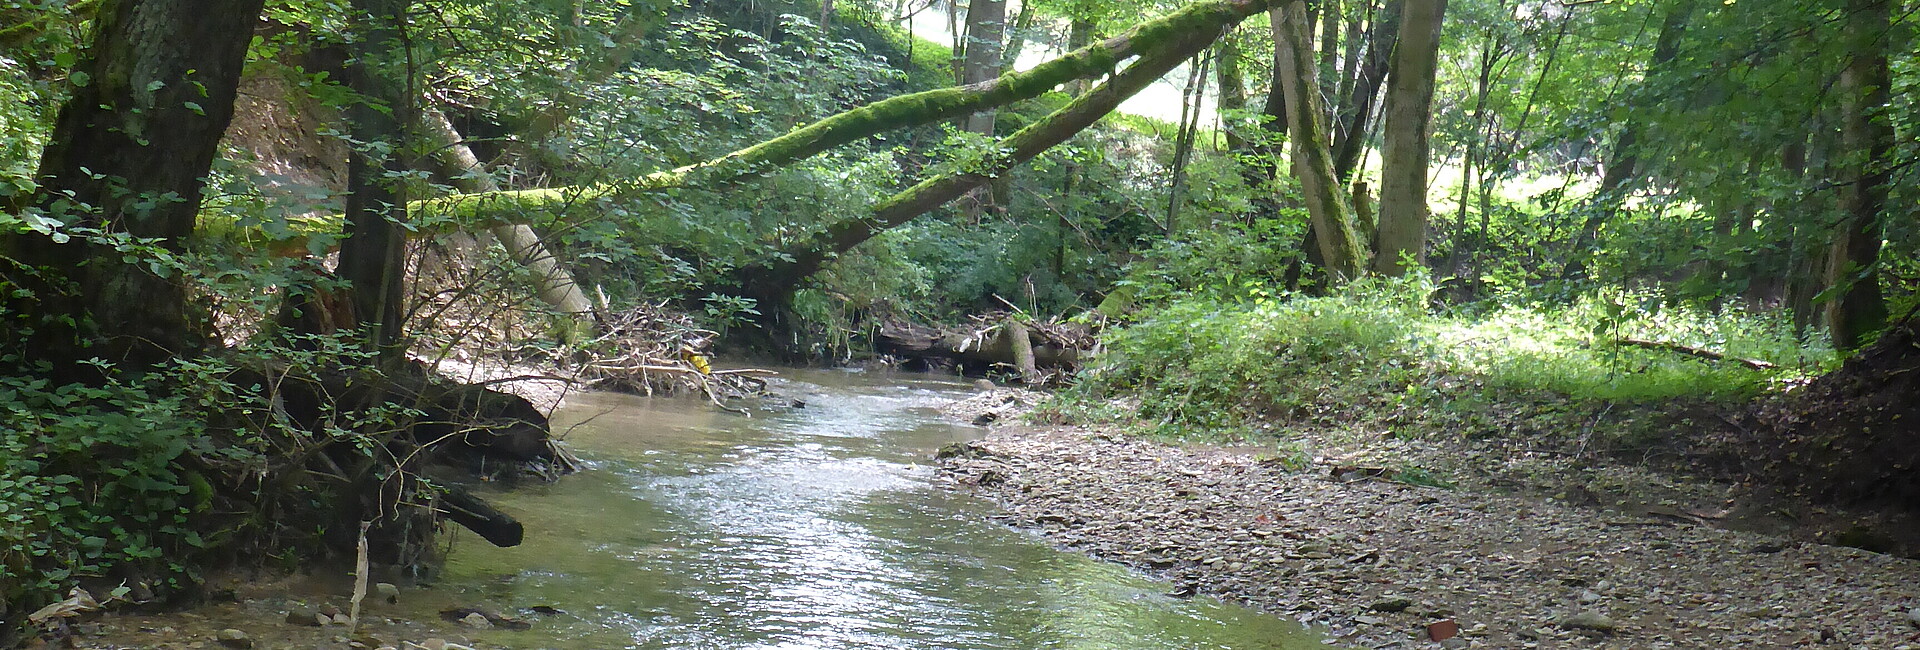 Blick auf einen kleinen Fluss, der umgeben von Bäumen ist